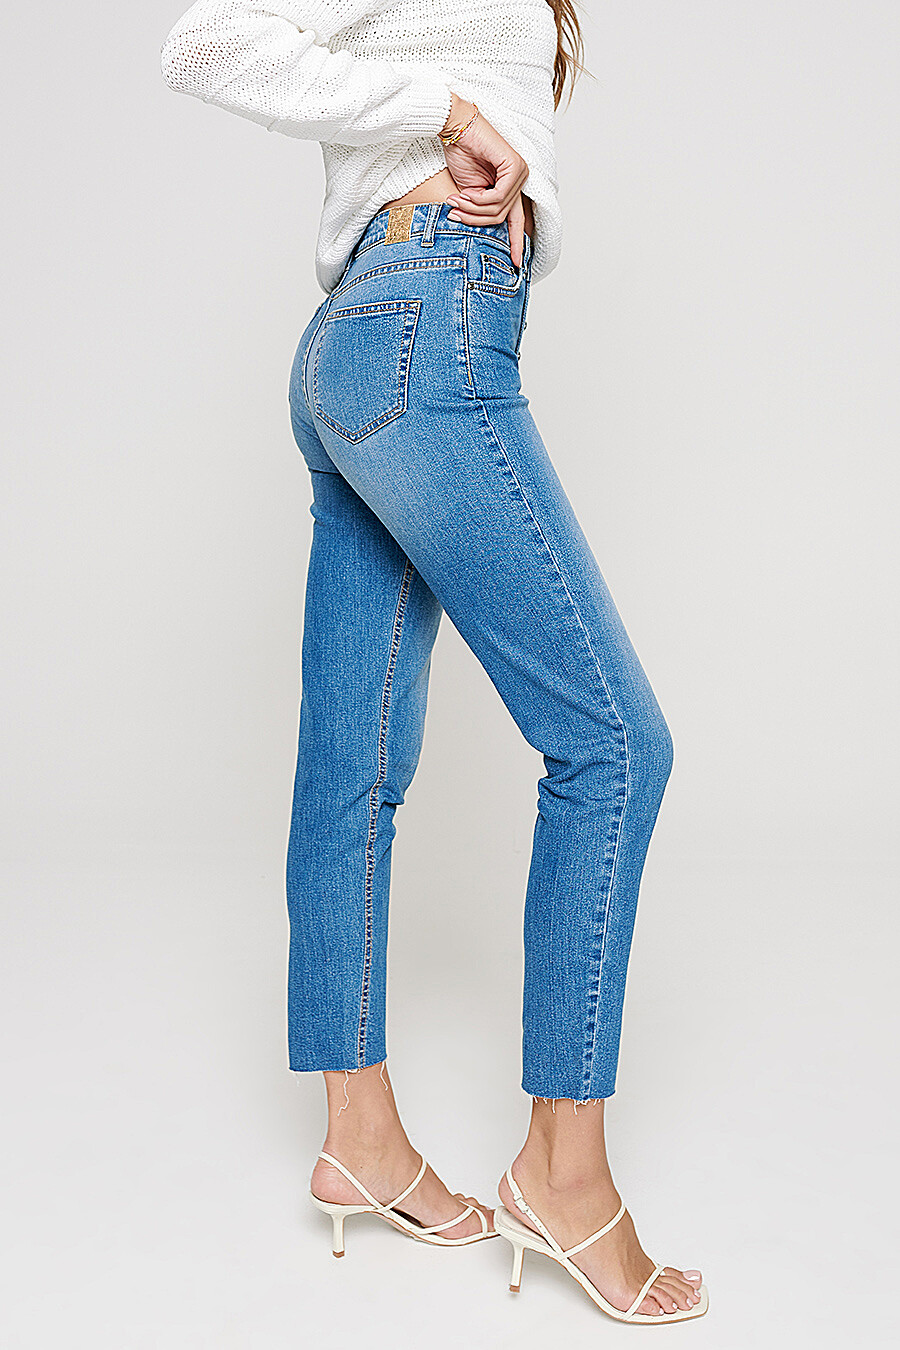 Оригинальные женские джинсы CON-189 mid blue 48 размера Conte-177519-Н  цена-4455 р. в интернет магазине beauti-full.ru